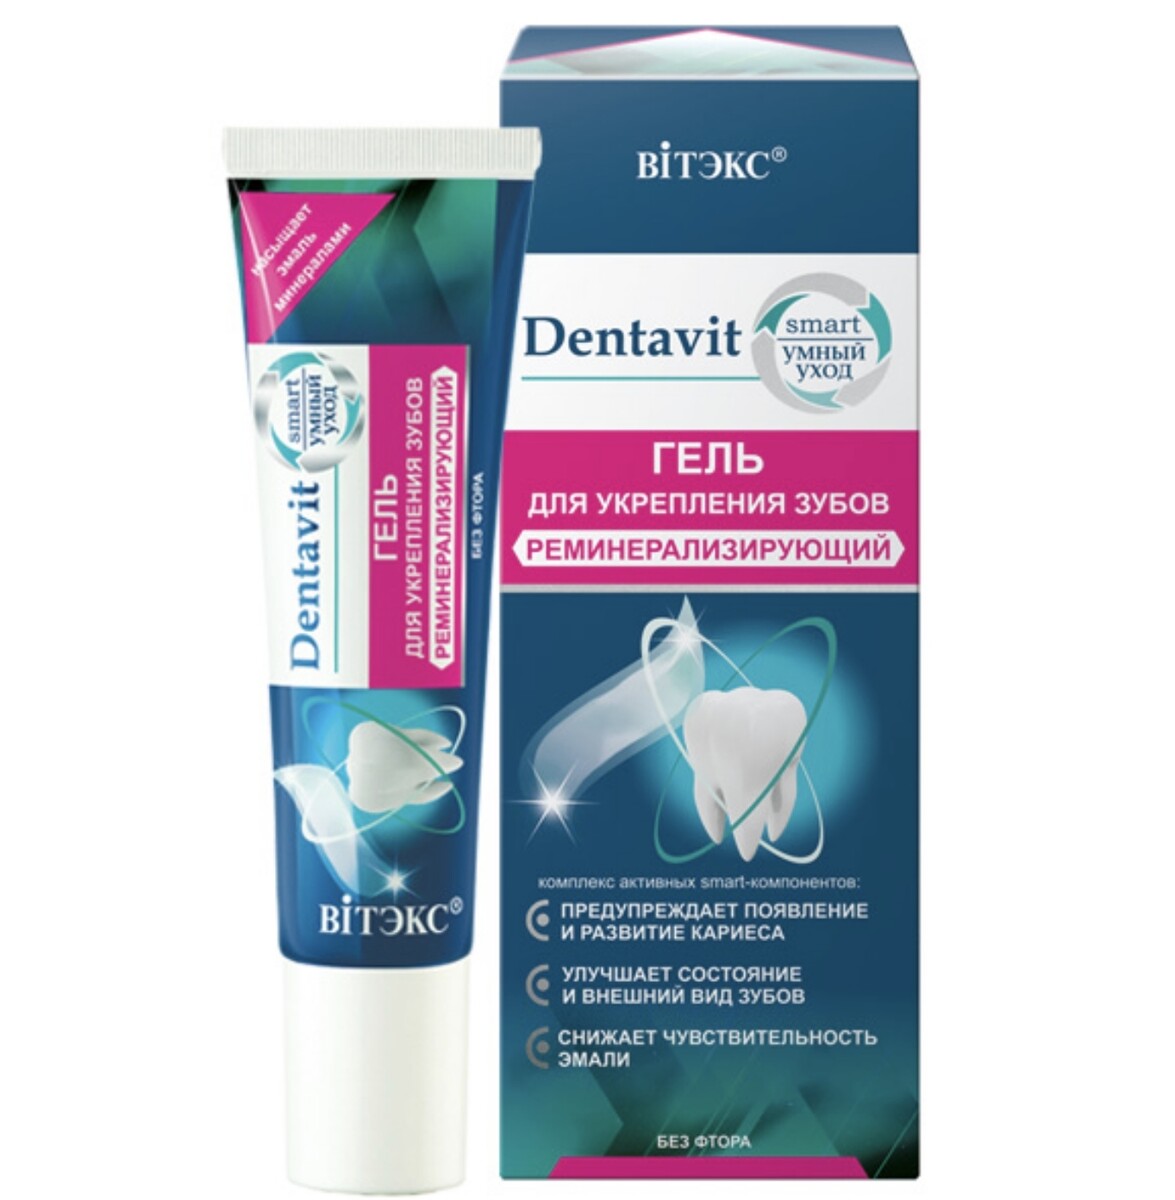 Dentavit-smart гель для укрепления зубов реминерализирующий (без фтора) 30г (без коробки) зубной гель